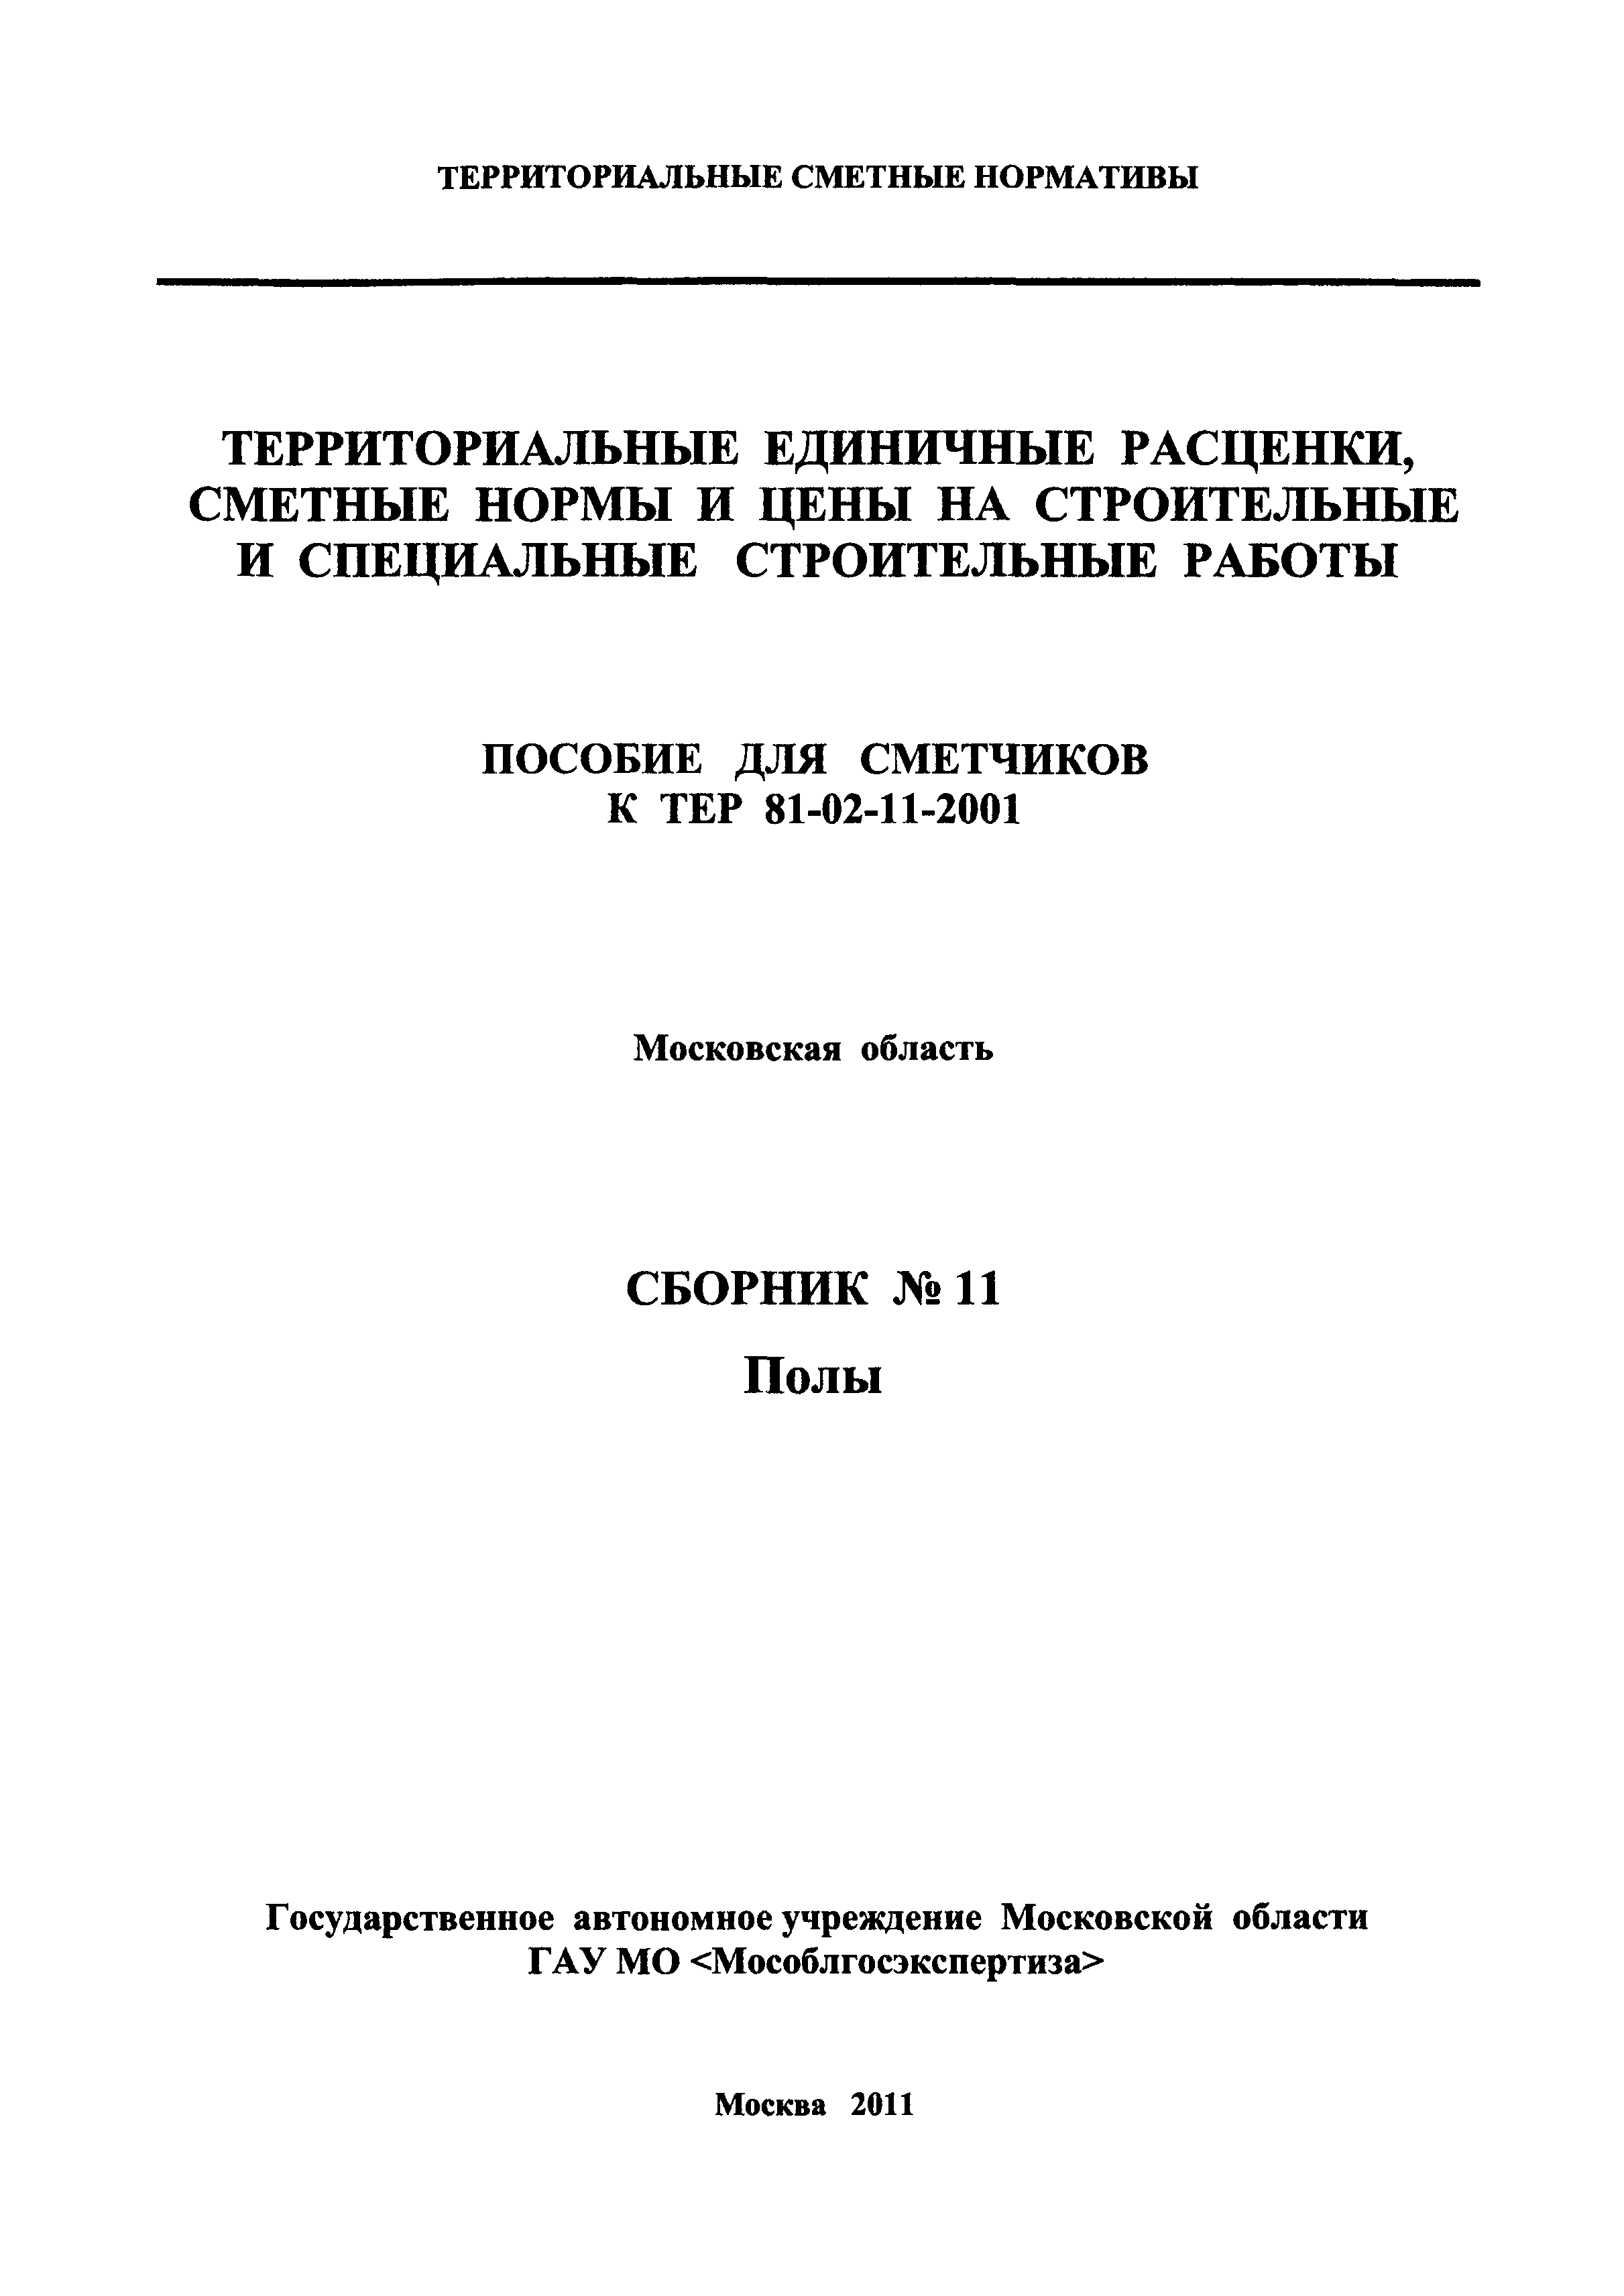 ГЭСНПиТЕР 2001-11 Московской области